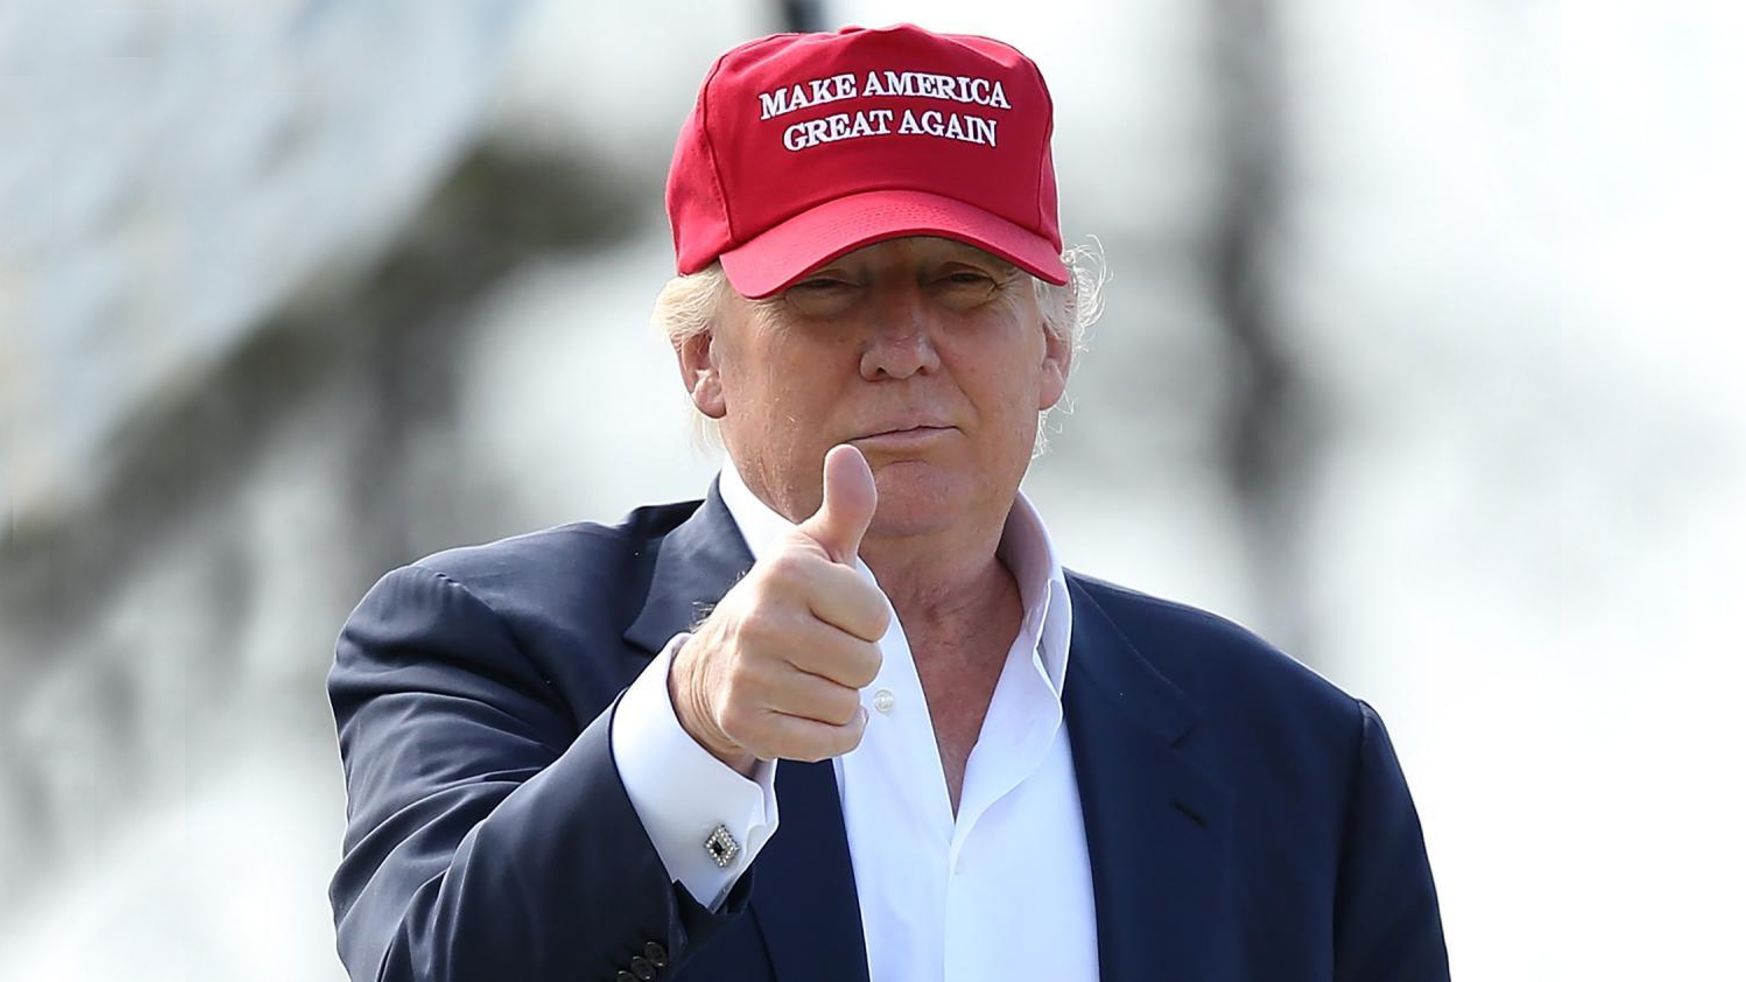 Donald Trump: Make America Great Again